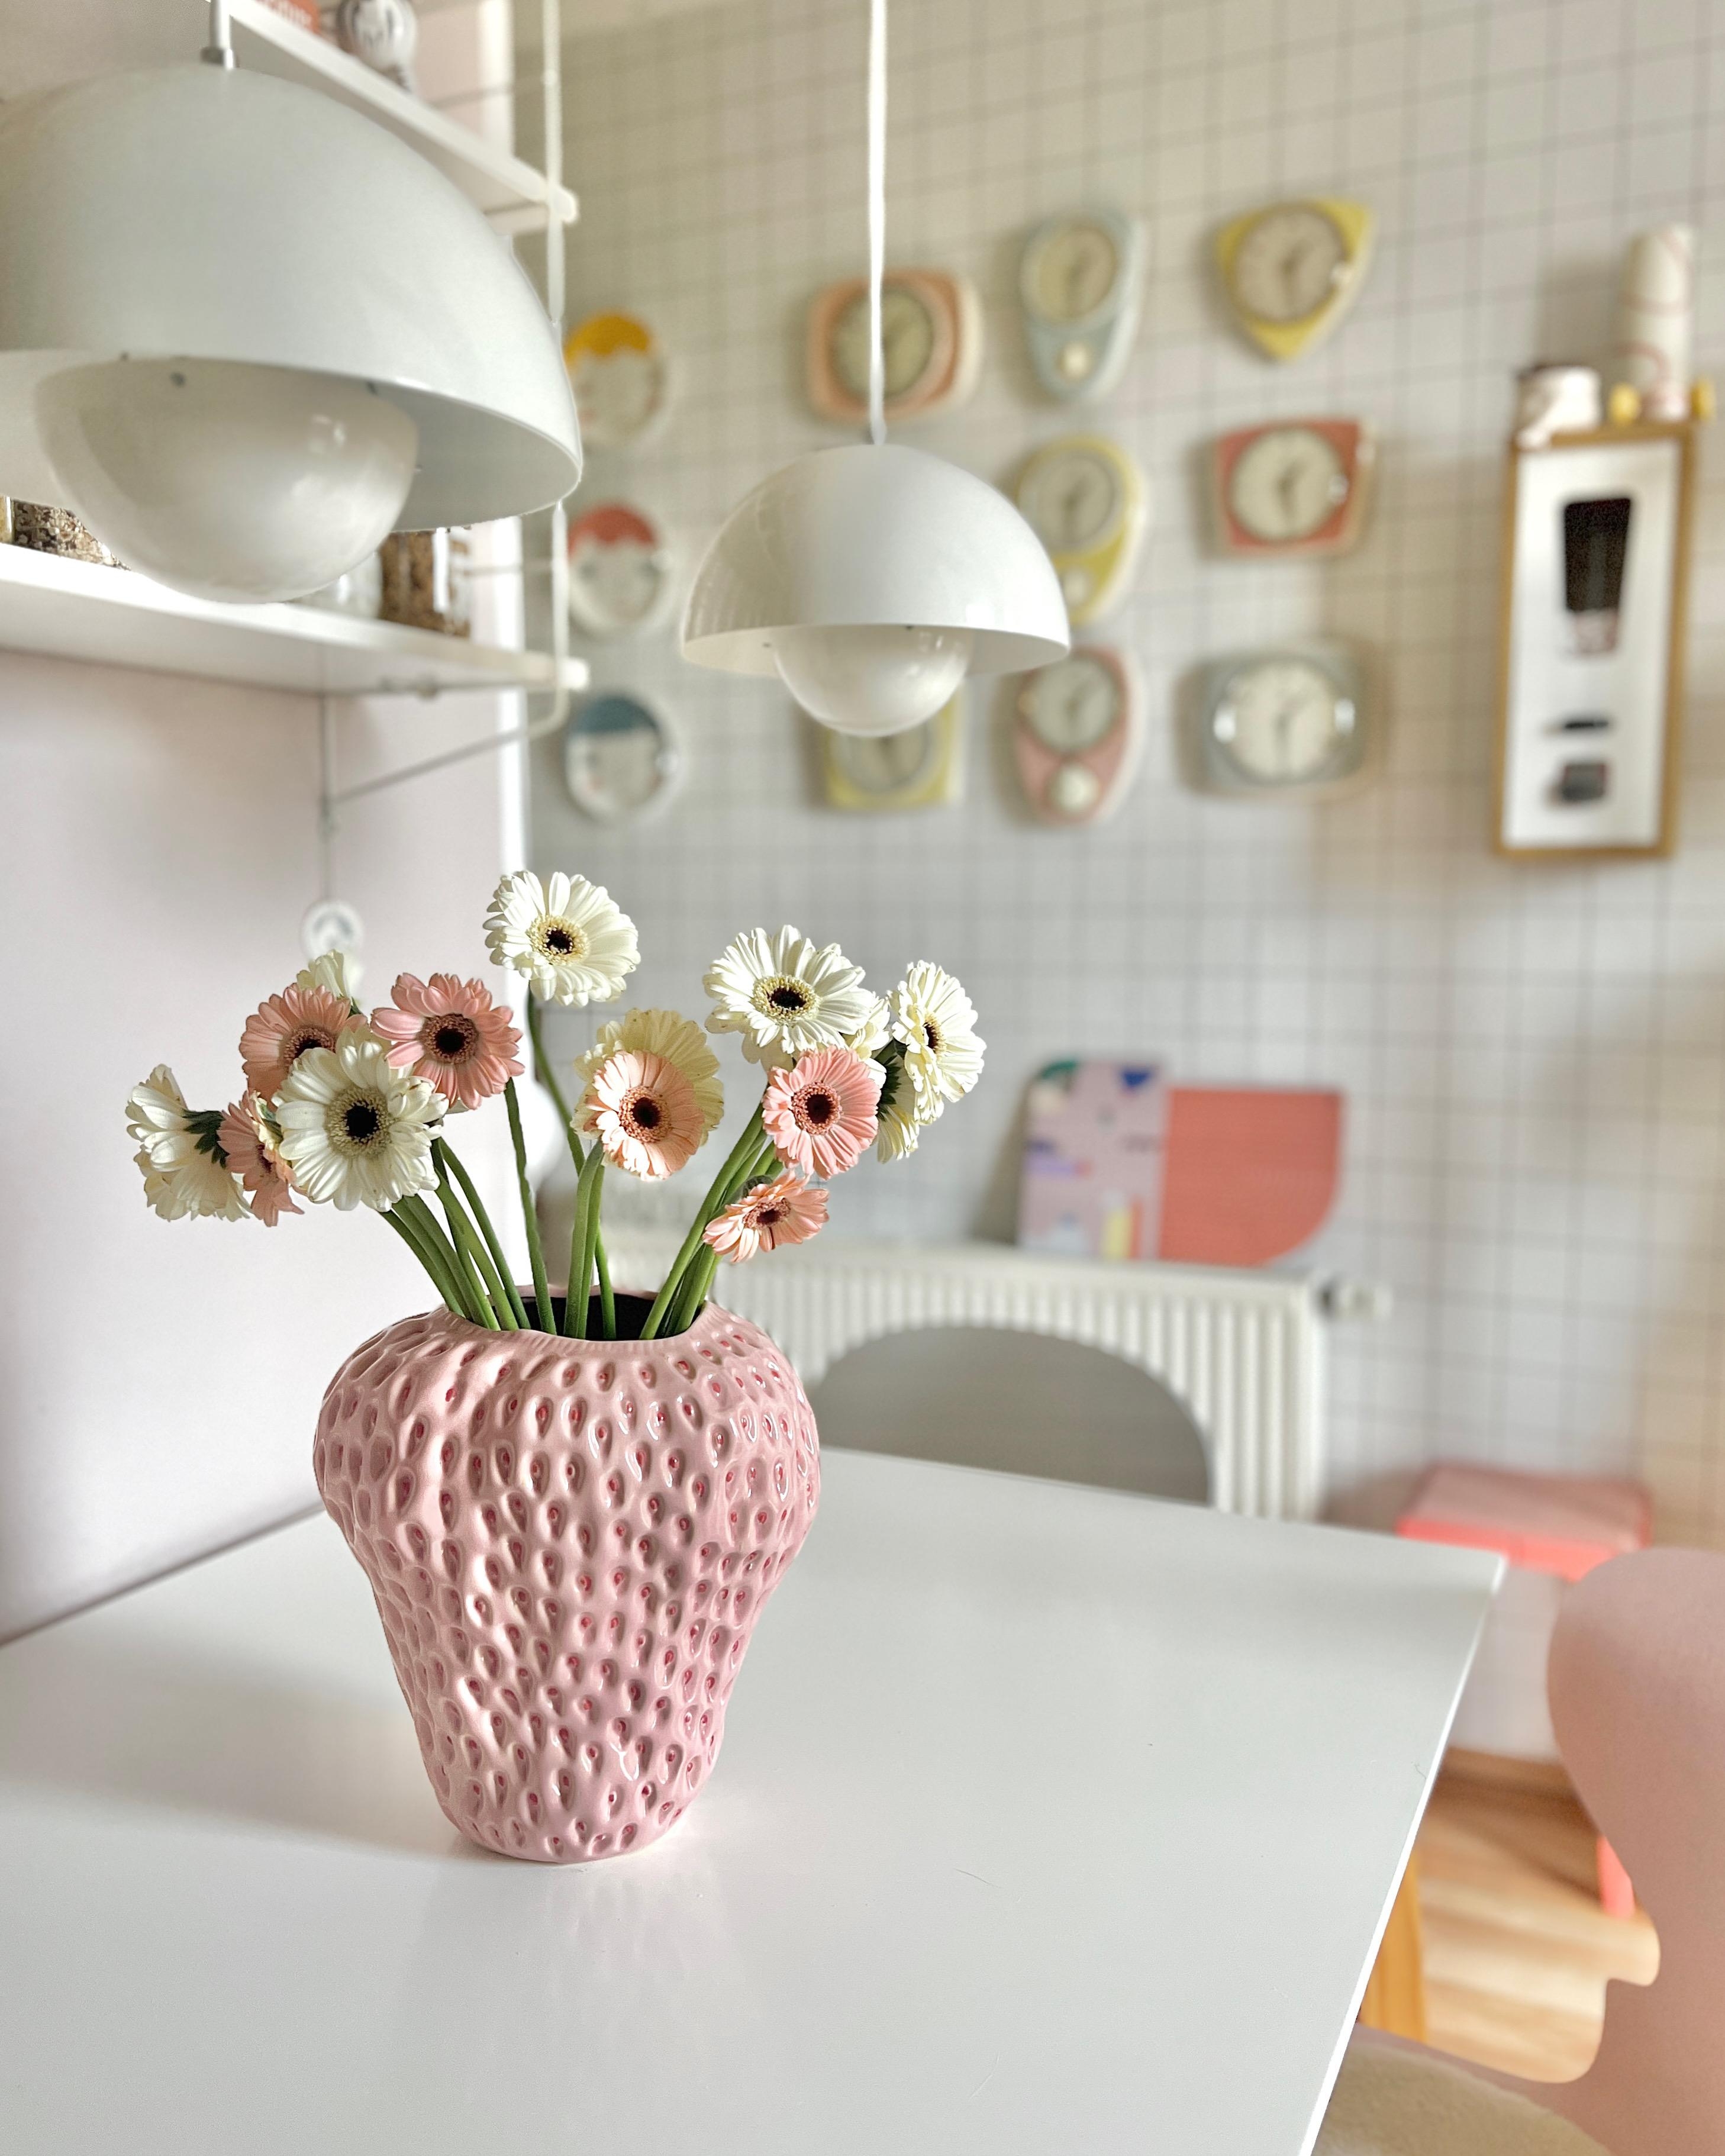 #interior #interiordesign #couchliebt #colourfulkitchen #vintage #pastell #küche #gerbera #frühling #flowerpot #vase